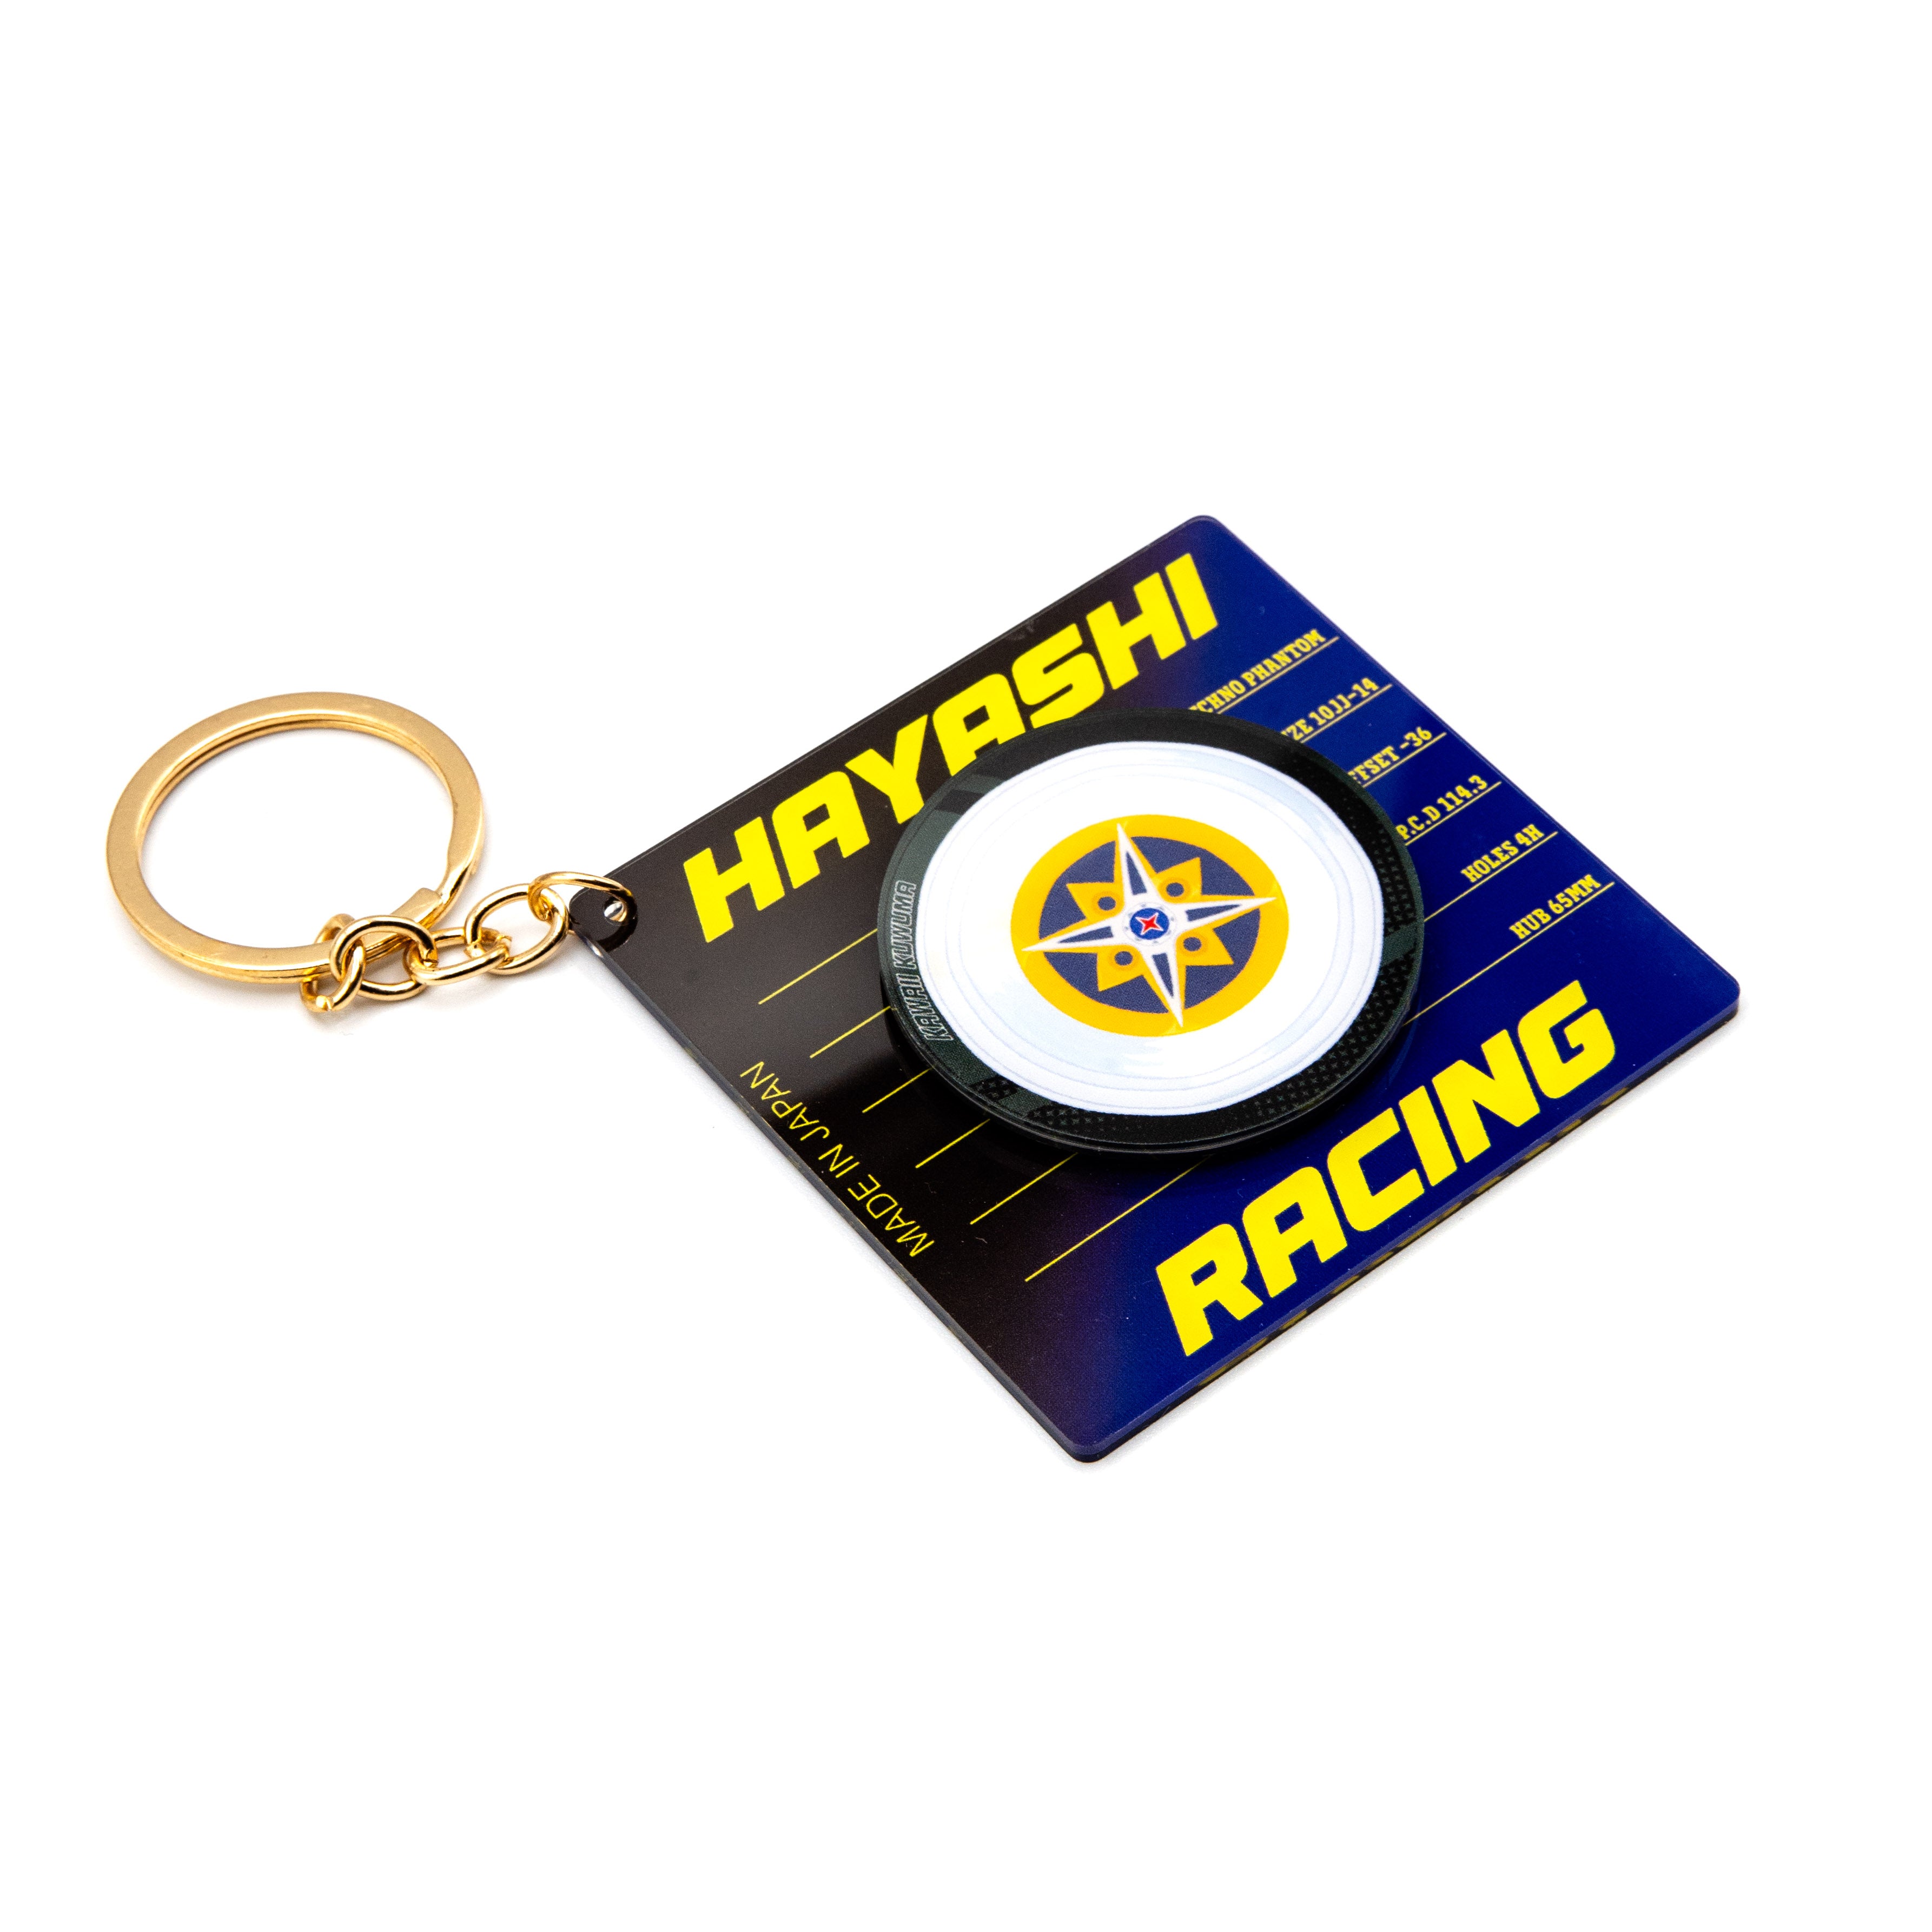 Hayashi Techno Phantom Spinny Wheel Keychain